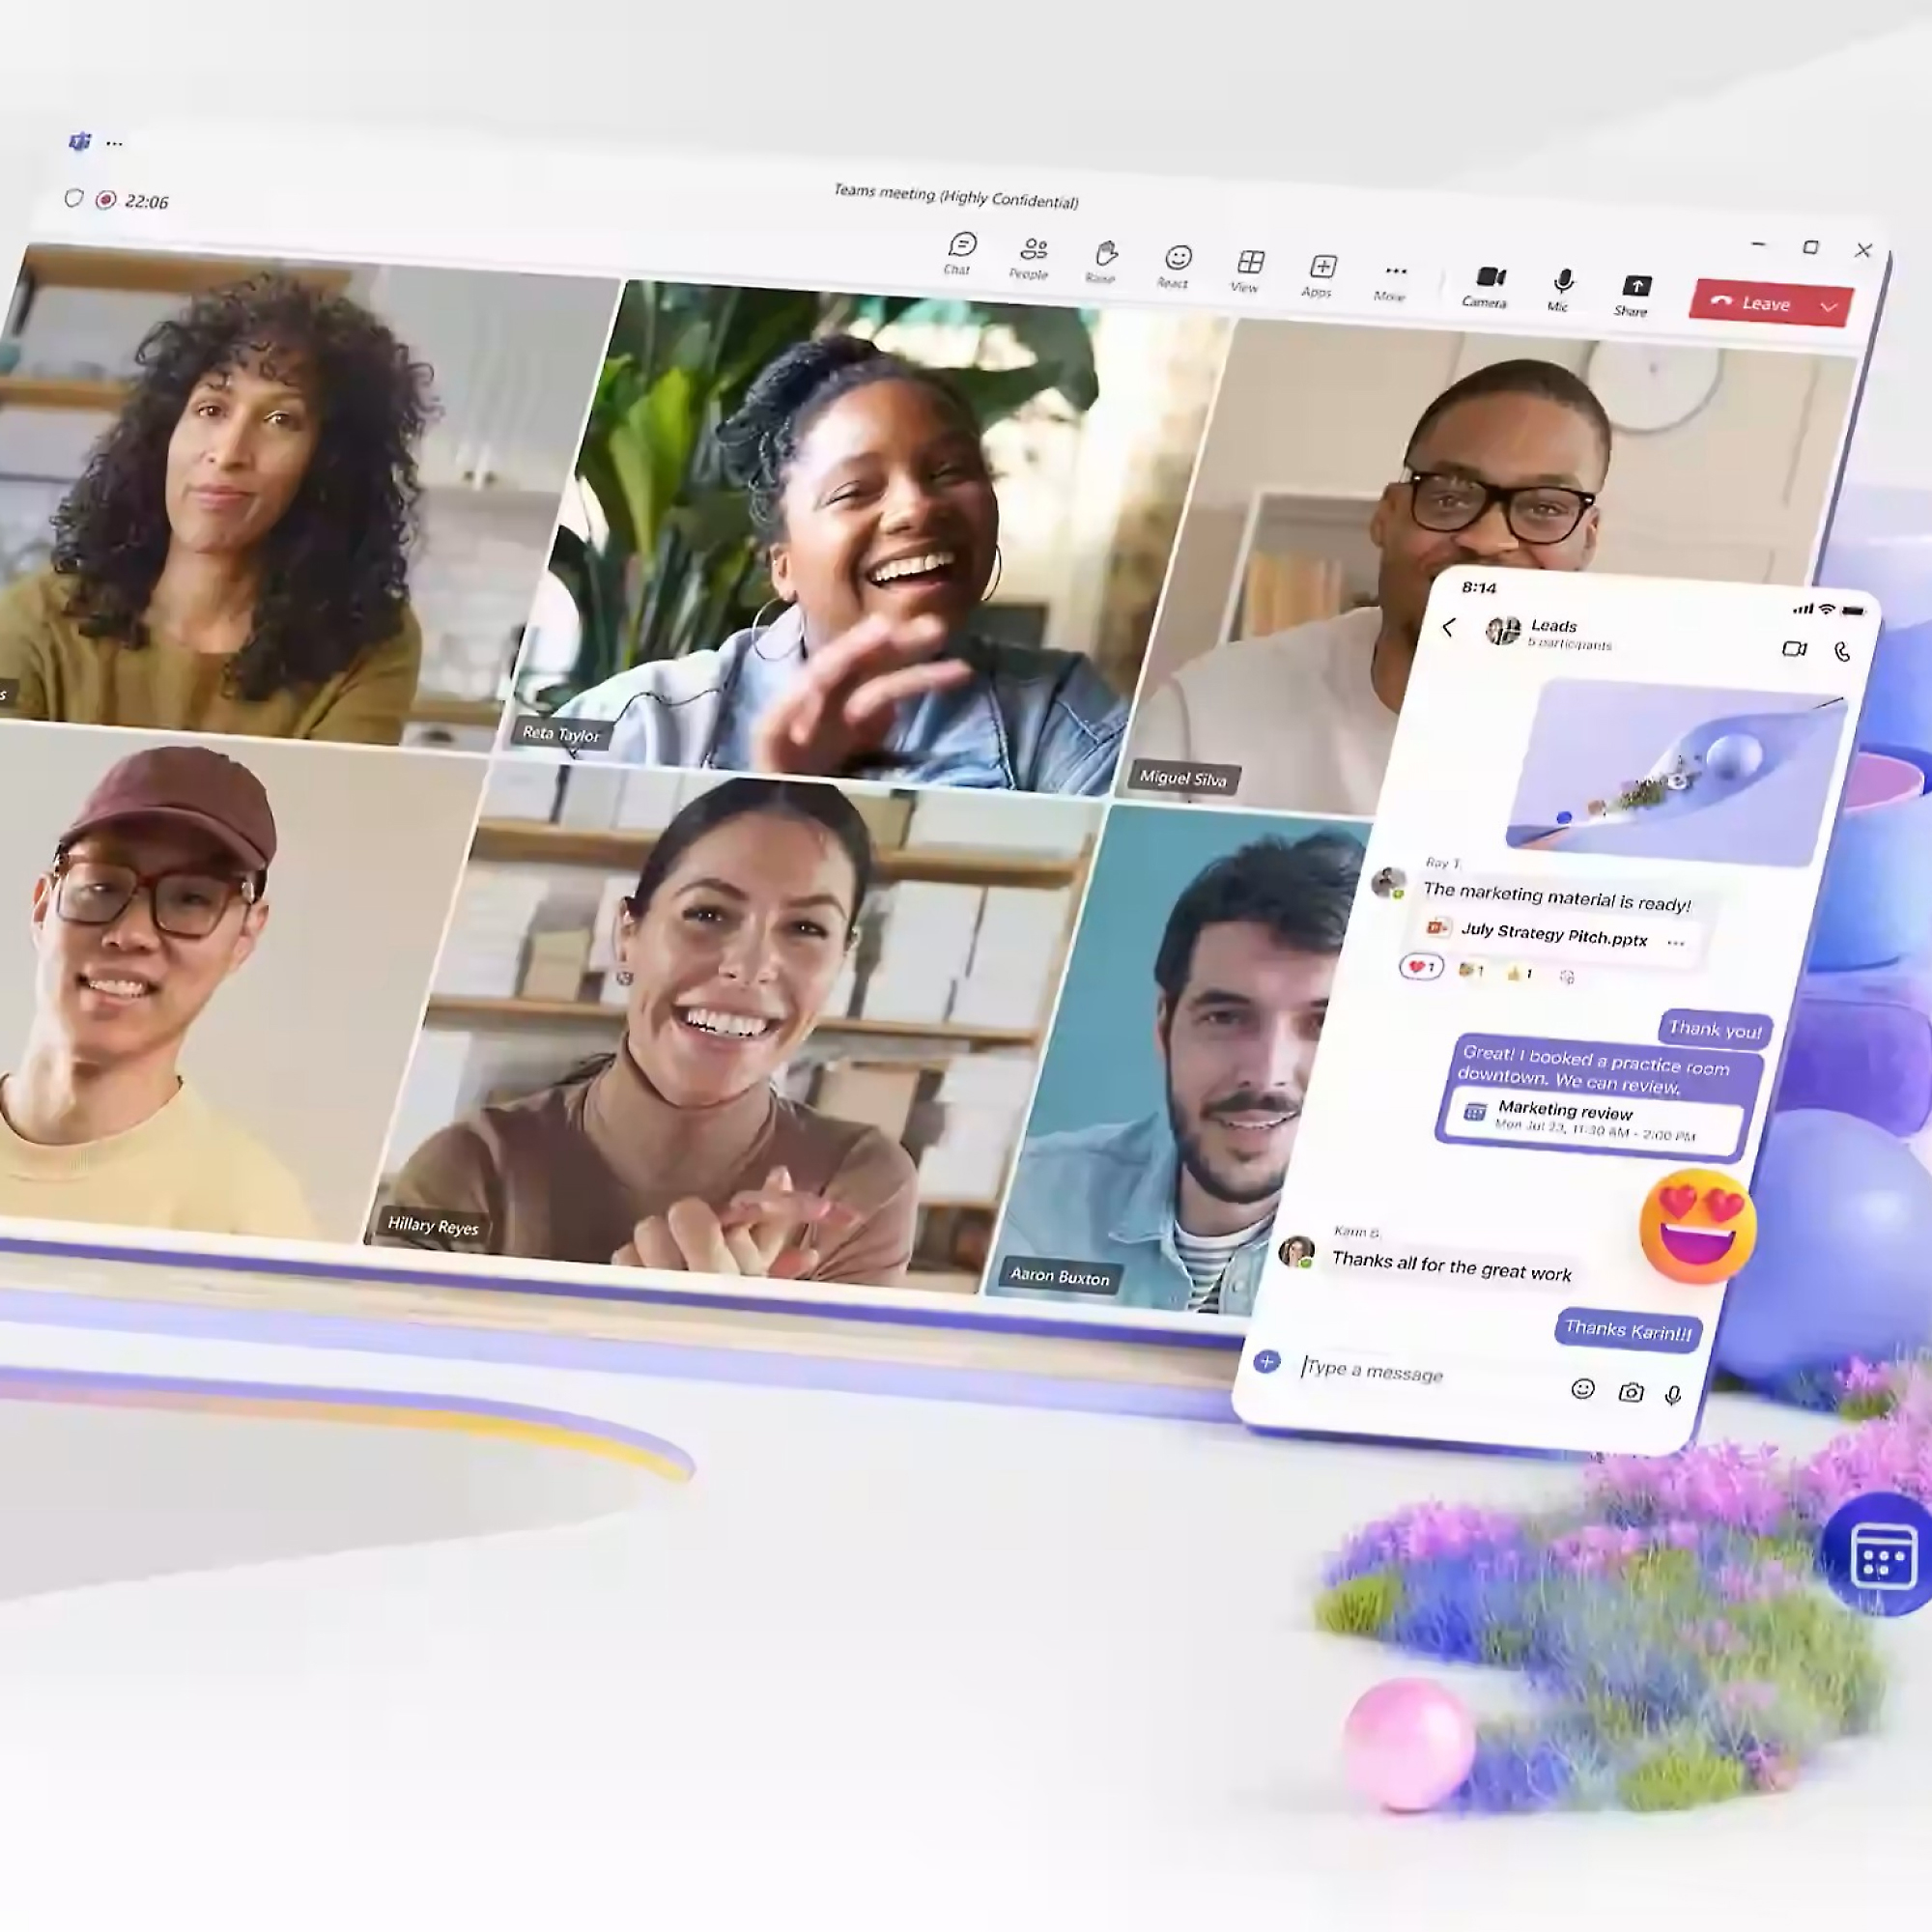 Interface numérique illustrant un appel vidéo avec cinq personnes diverses participant activement